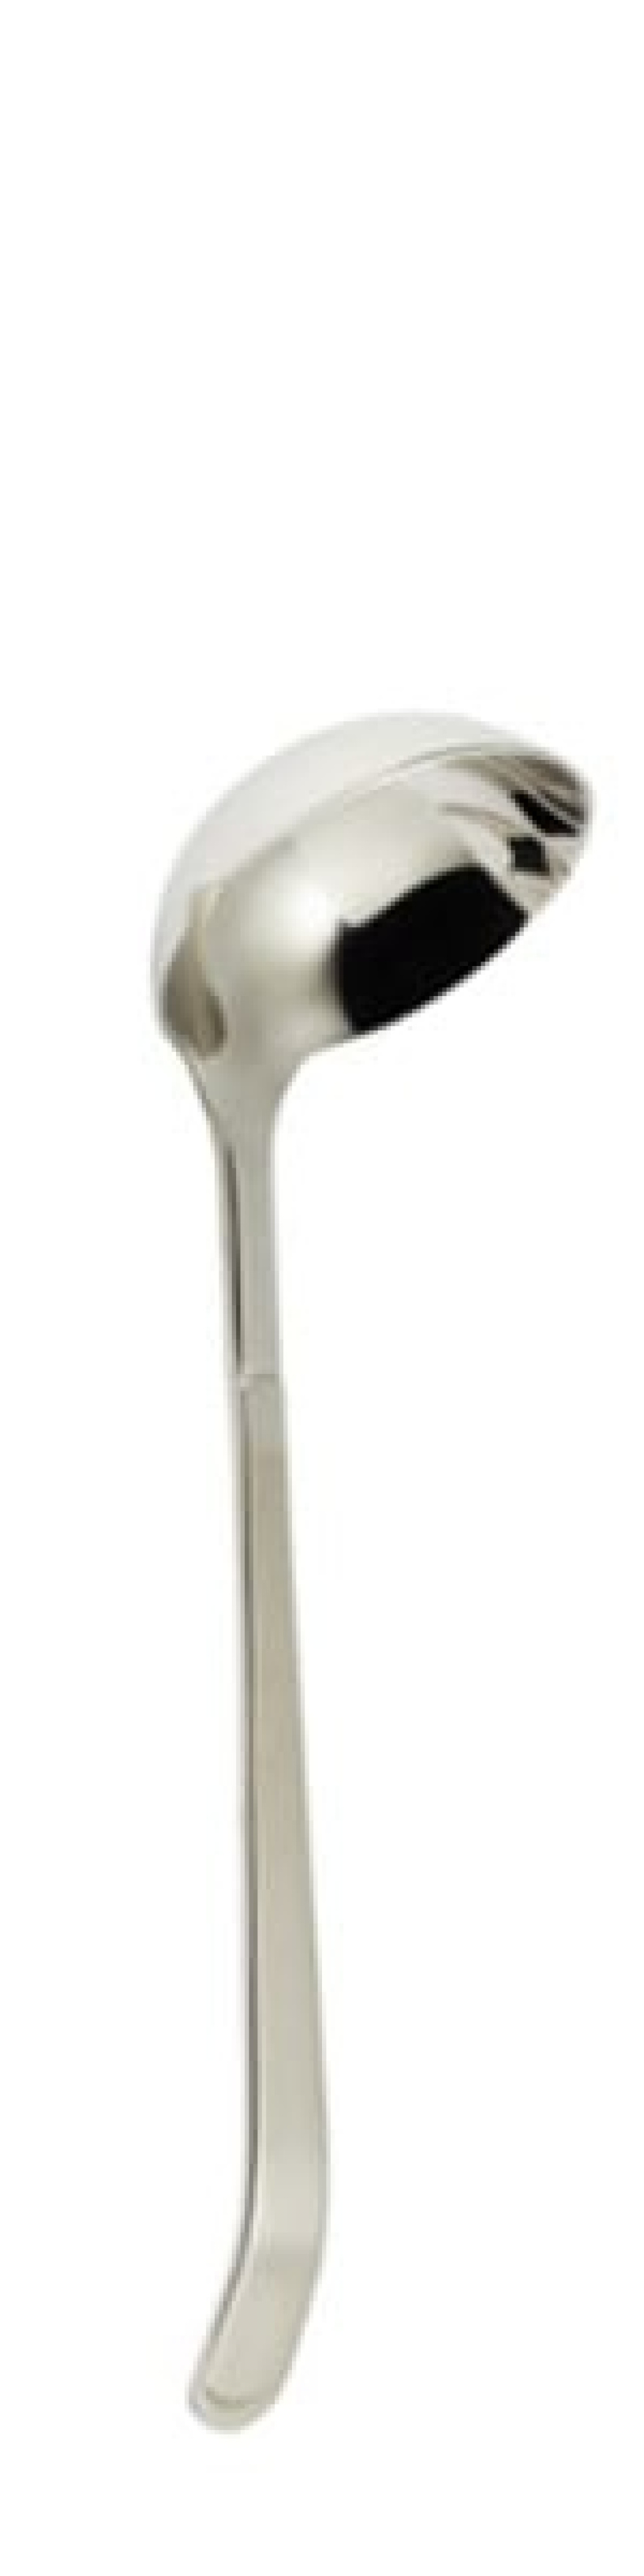 Funktion Sauceske 215 mm - Solex i gruppen Madlavning / Køkkenredskaber / Hælde og øse skeer hos The Kitchen Lab (1284-21679)